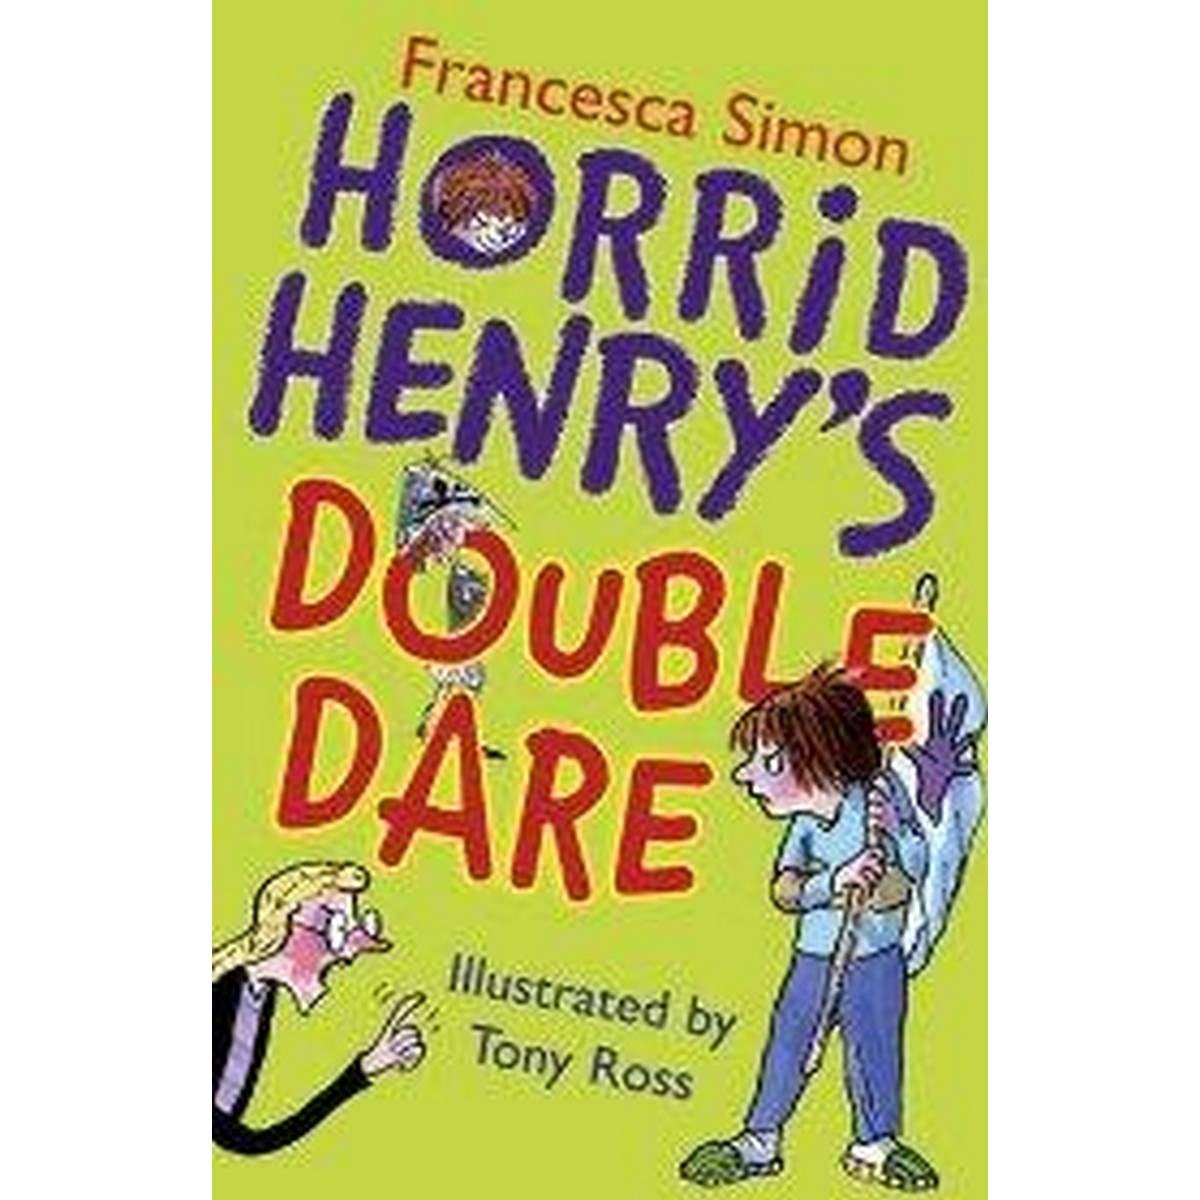 Horrid Henry's Double Dare